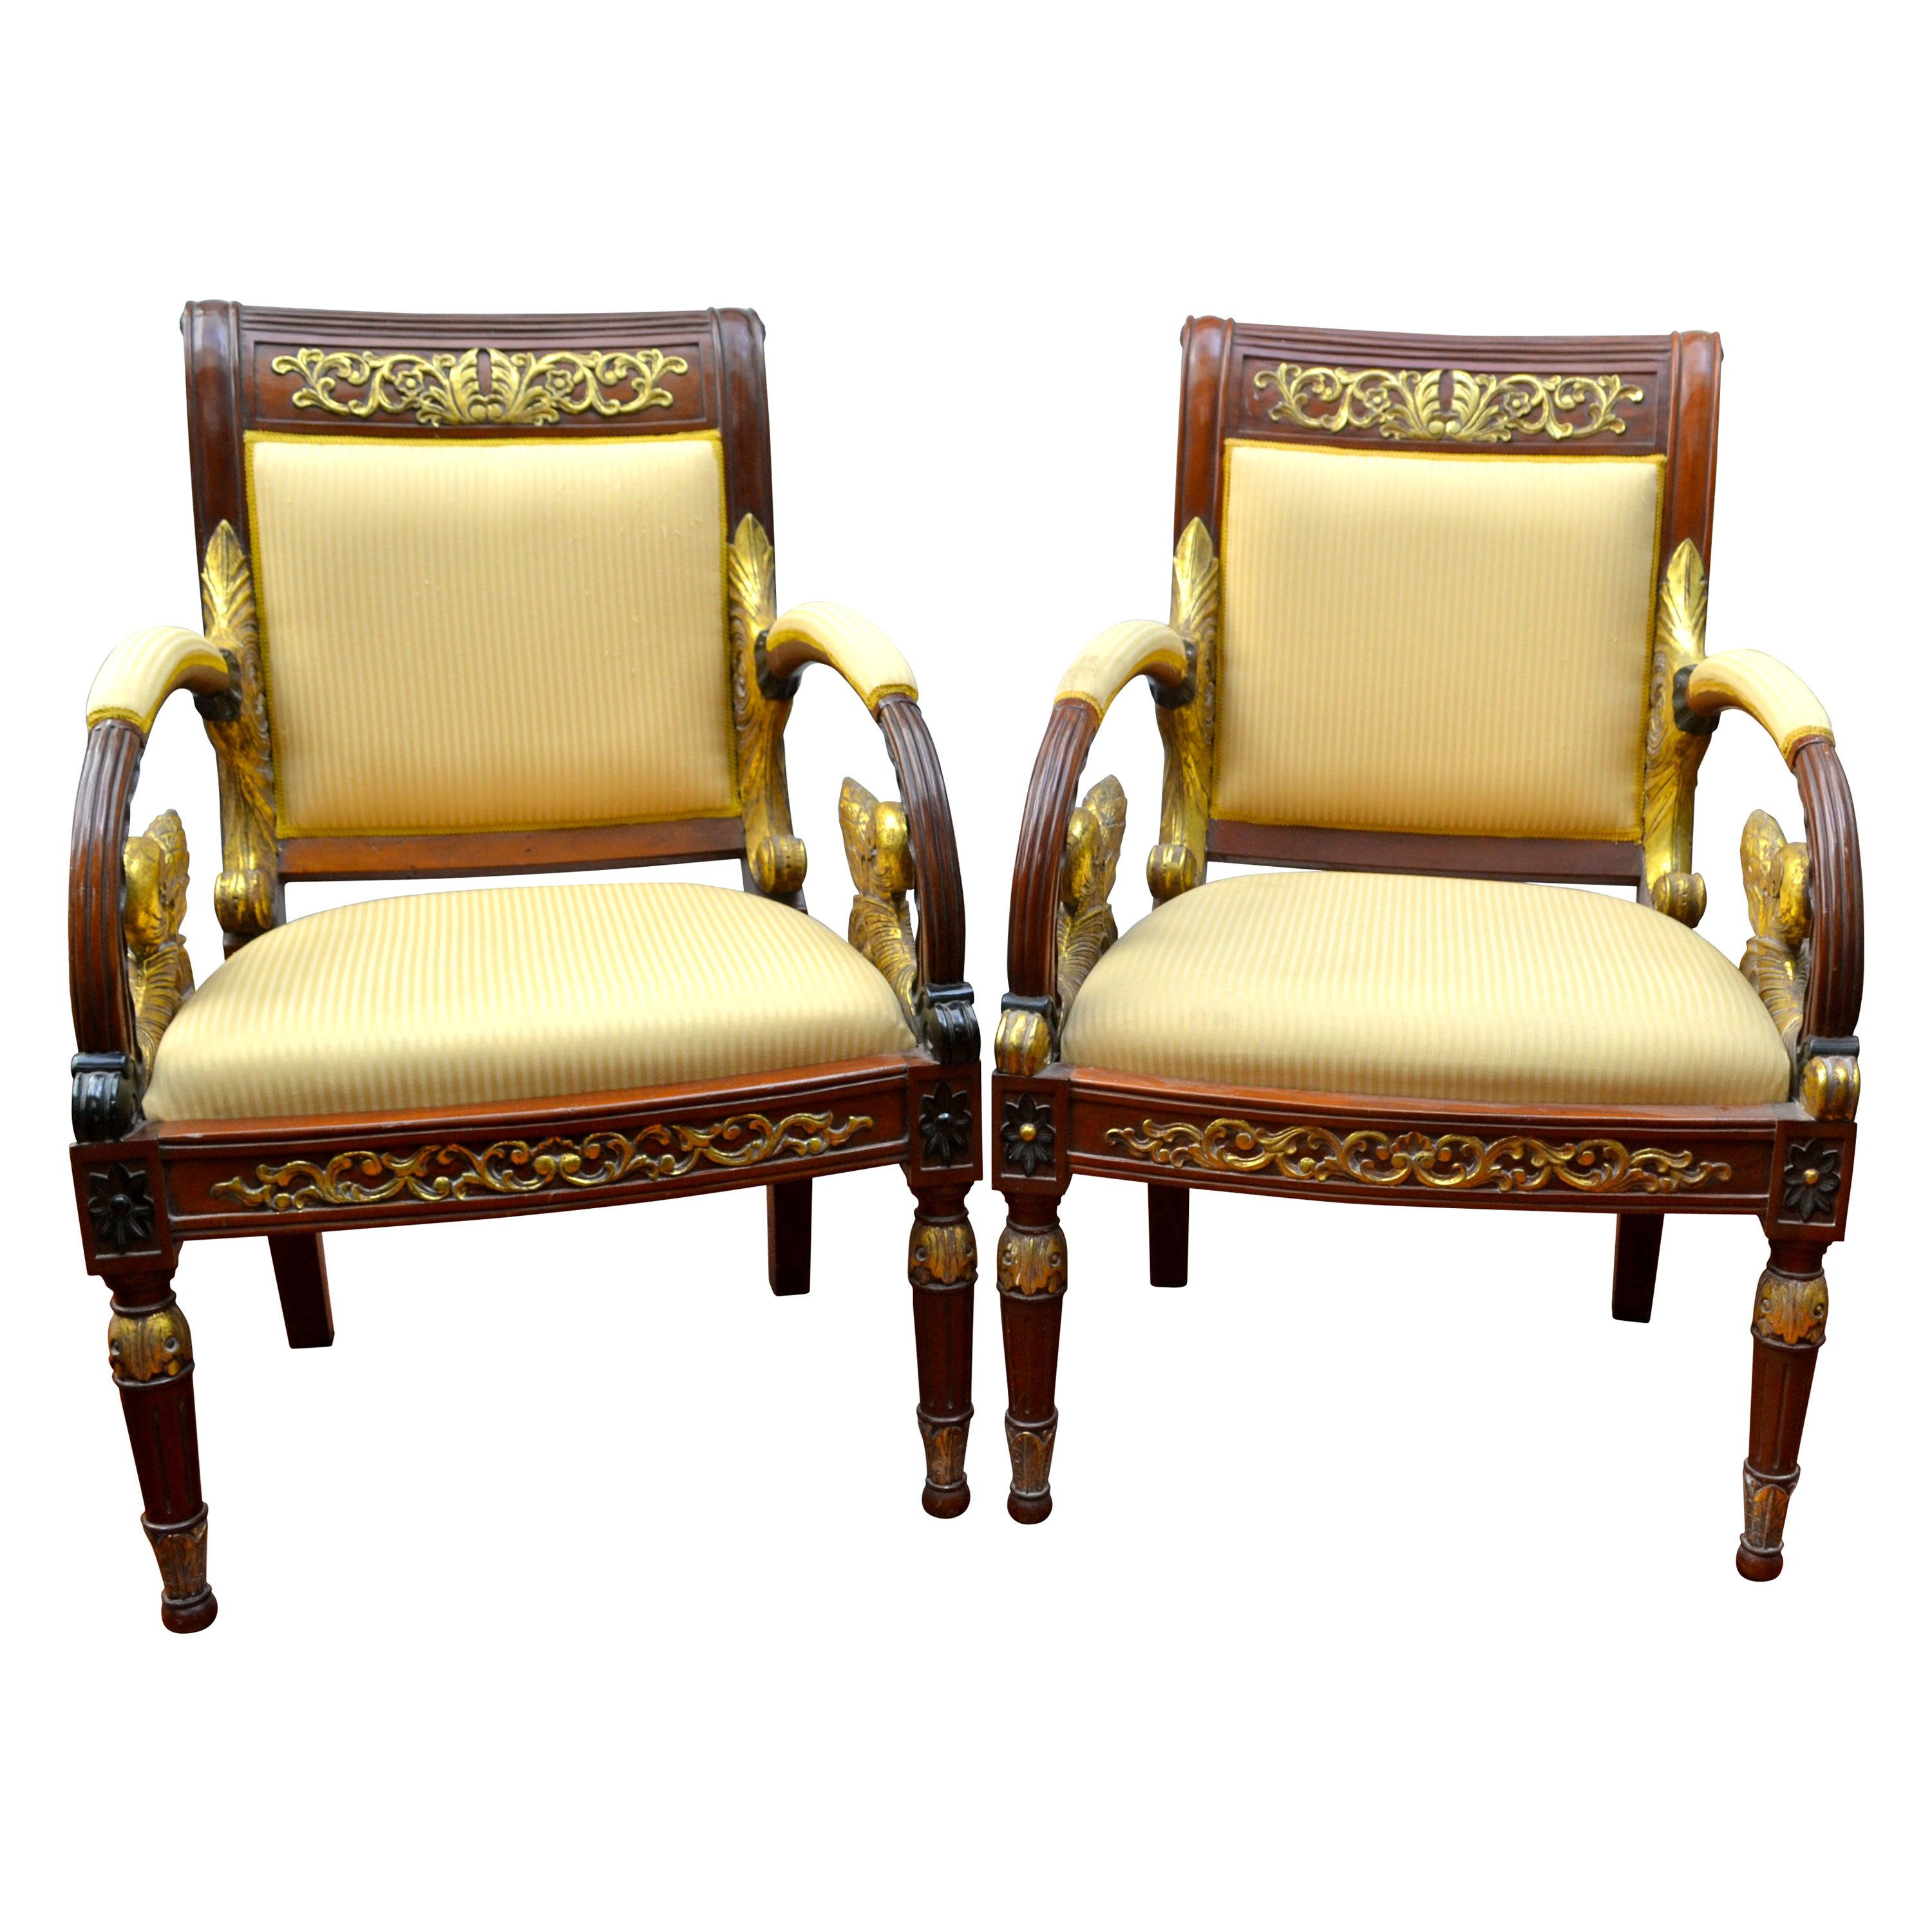 Une paire rare d'élégants et uniques fauteuils en acajou et dorés conçus par Gianni Versace, faisant partie de la collection de meubles Vanitas de 1994. Les pieds avant sont en forme de colonne et s'effilent jusqu'au sol. Les pieds arrière sont